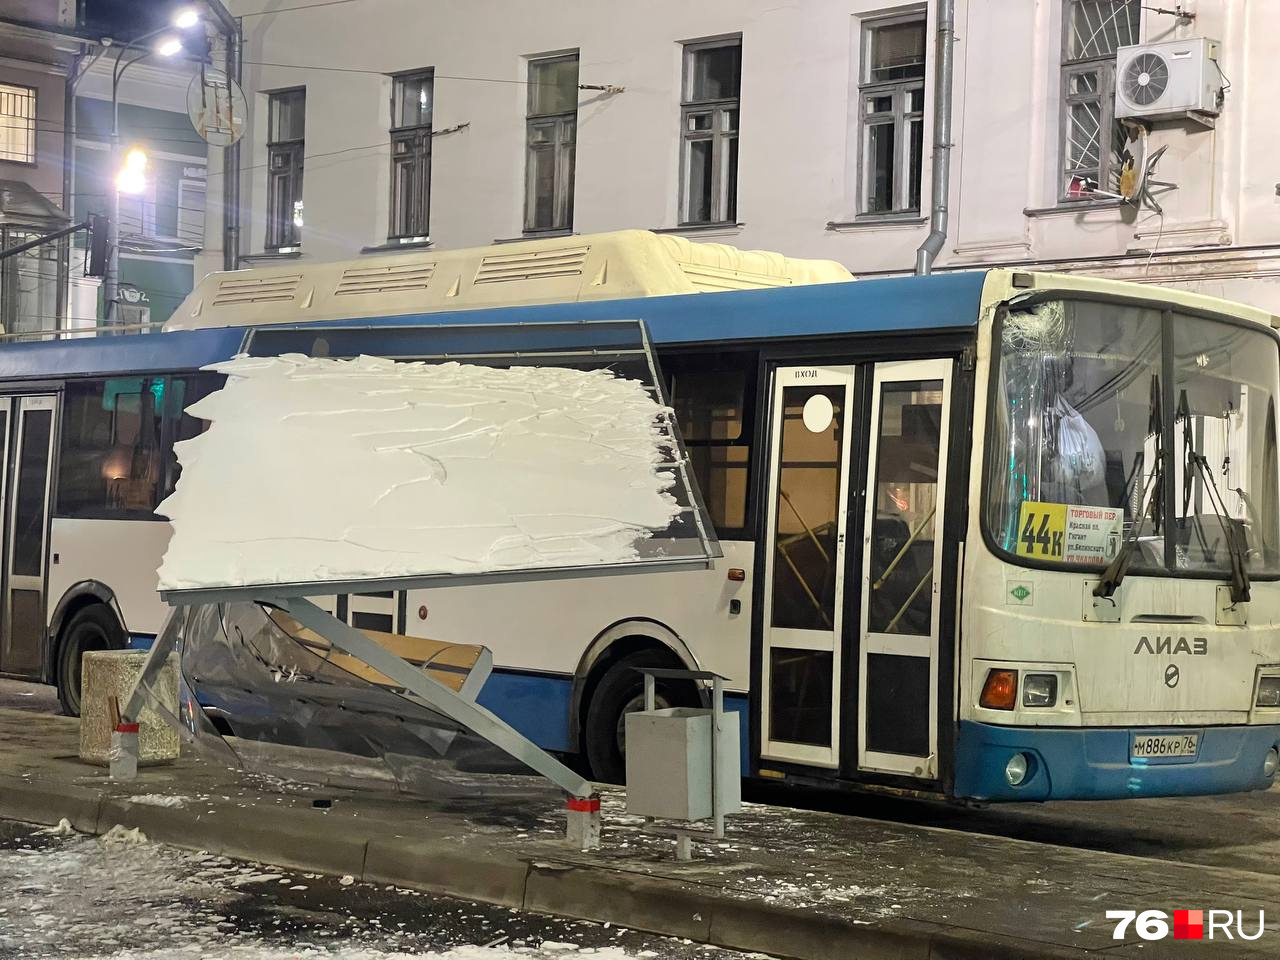 У автобуса от удара повреждено лобовое стекло